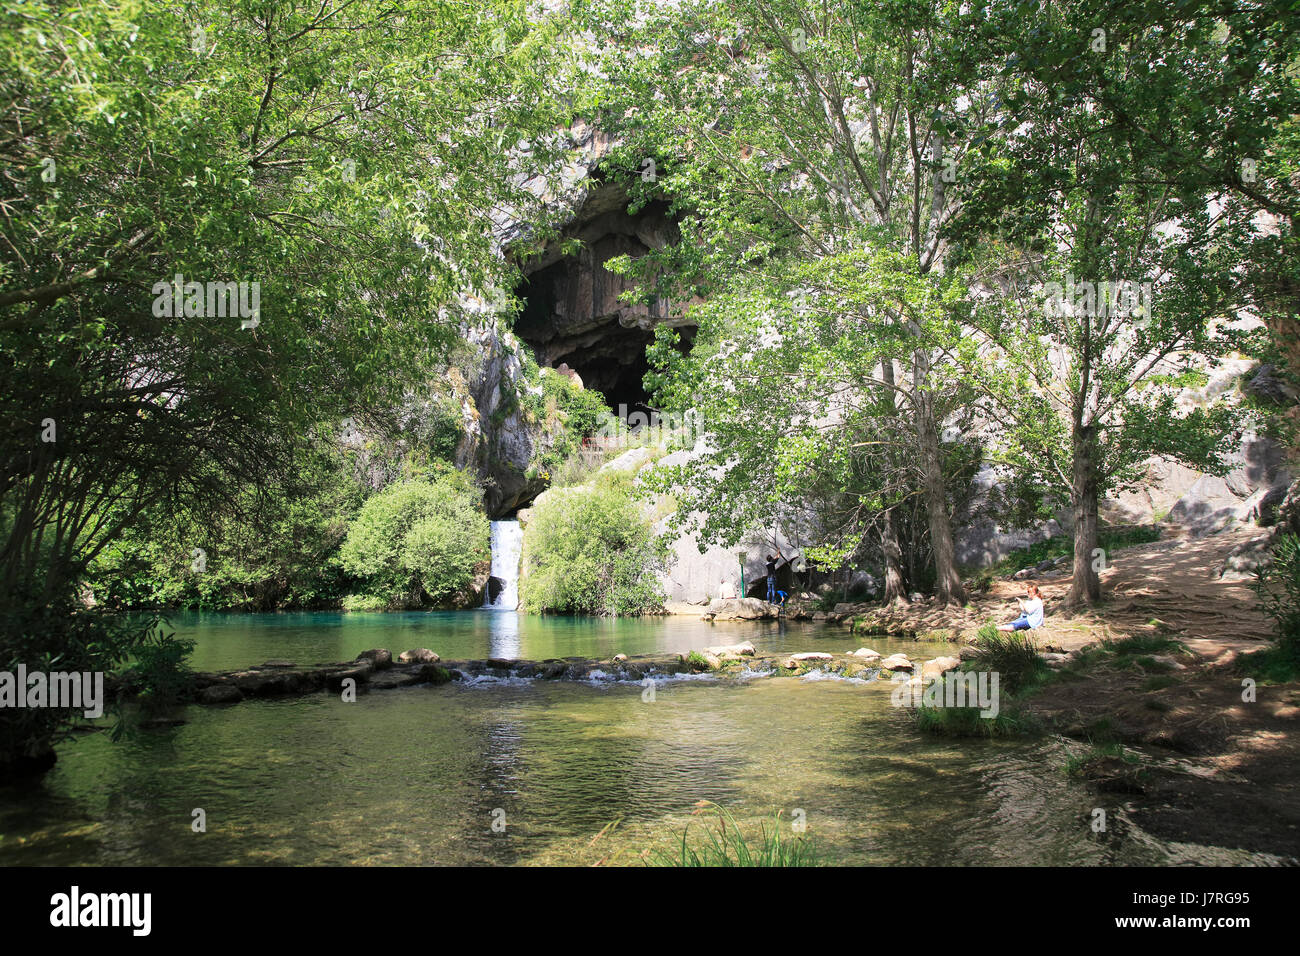 Stream resurgence from limestone cave, Cueva del Gato, Benaojan, Serrania de Ronda, Malaga province, Spain Stock Photo